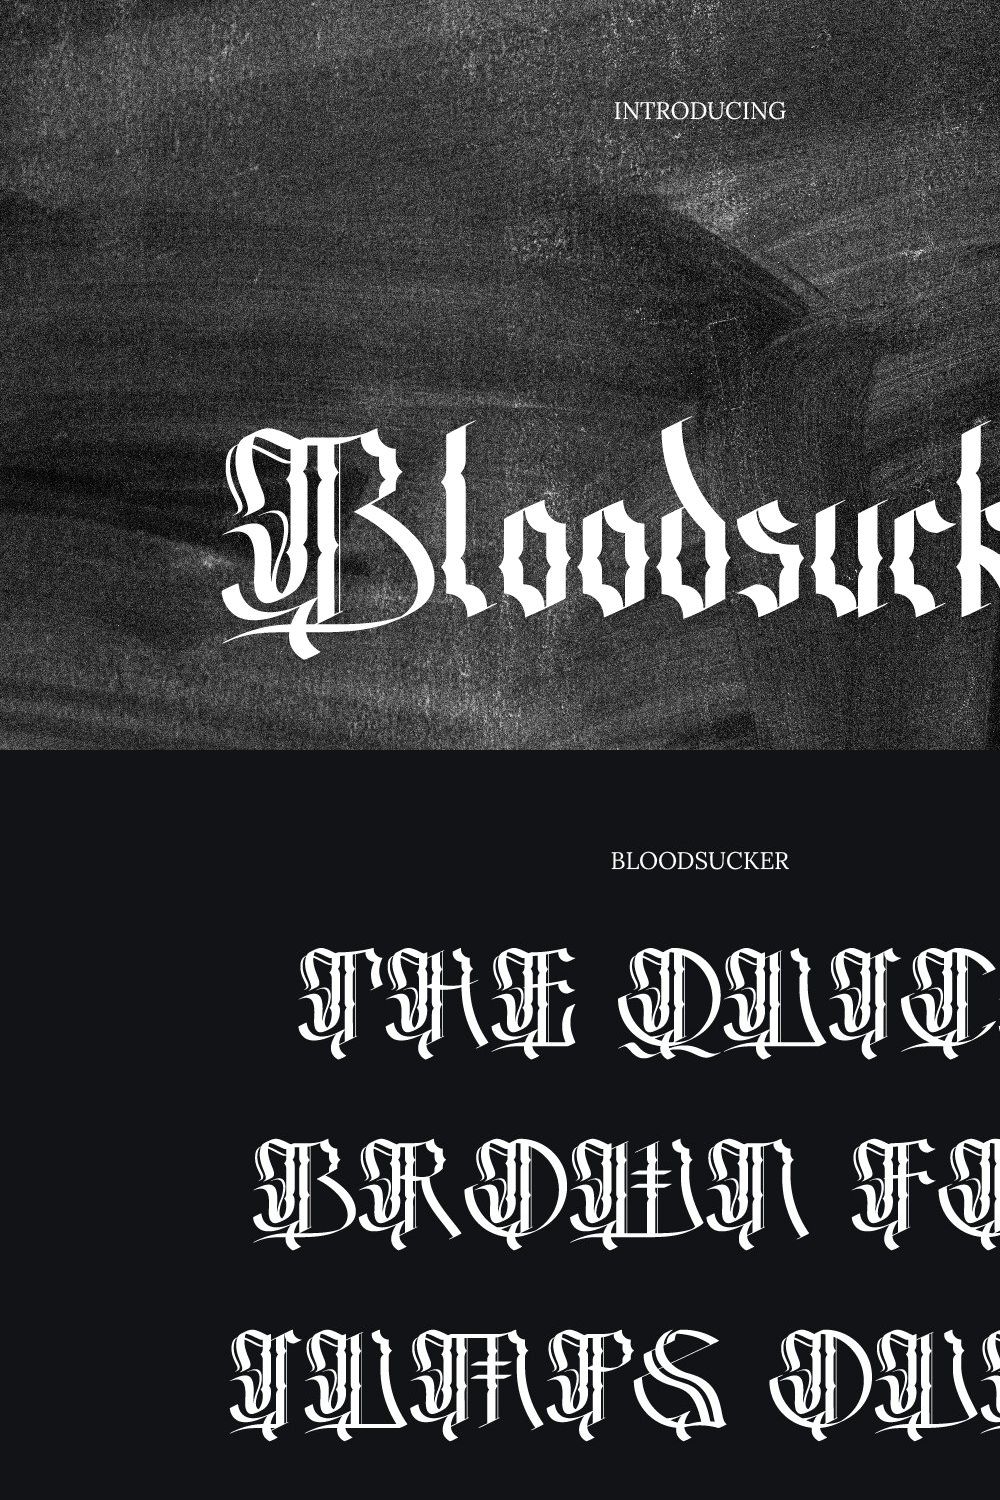 Bloodsucker Modern Blackletter pinterest preview image.